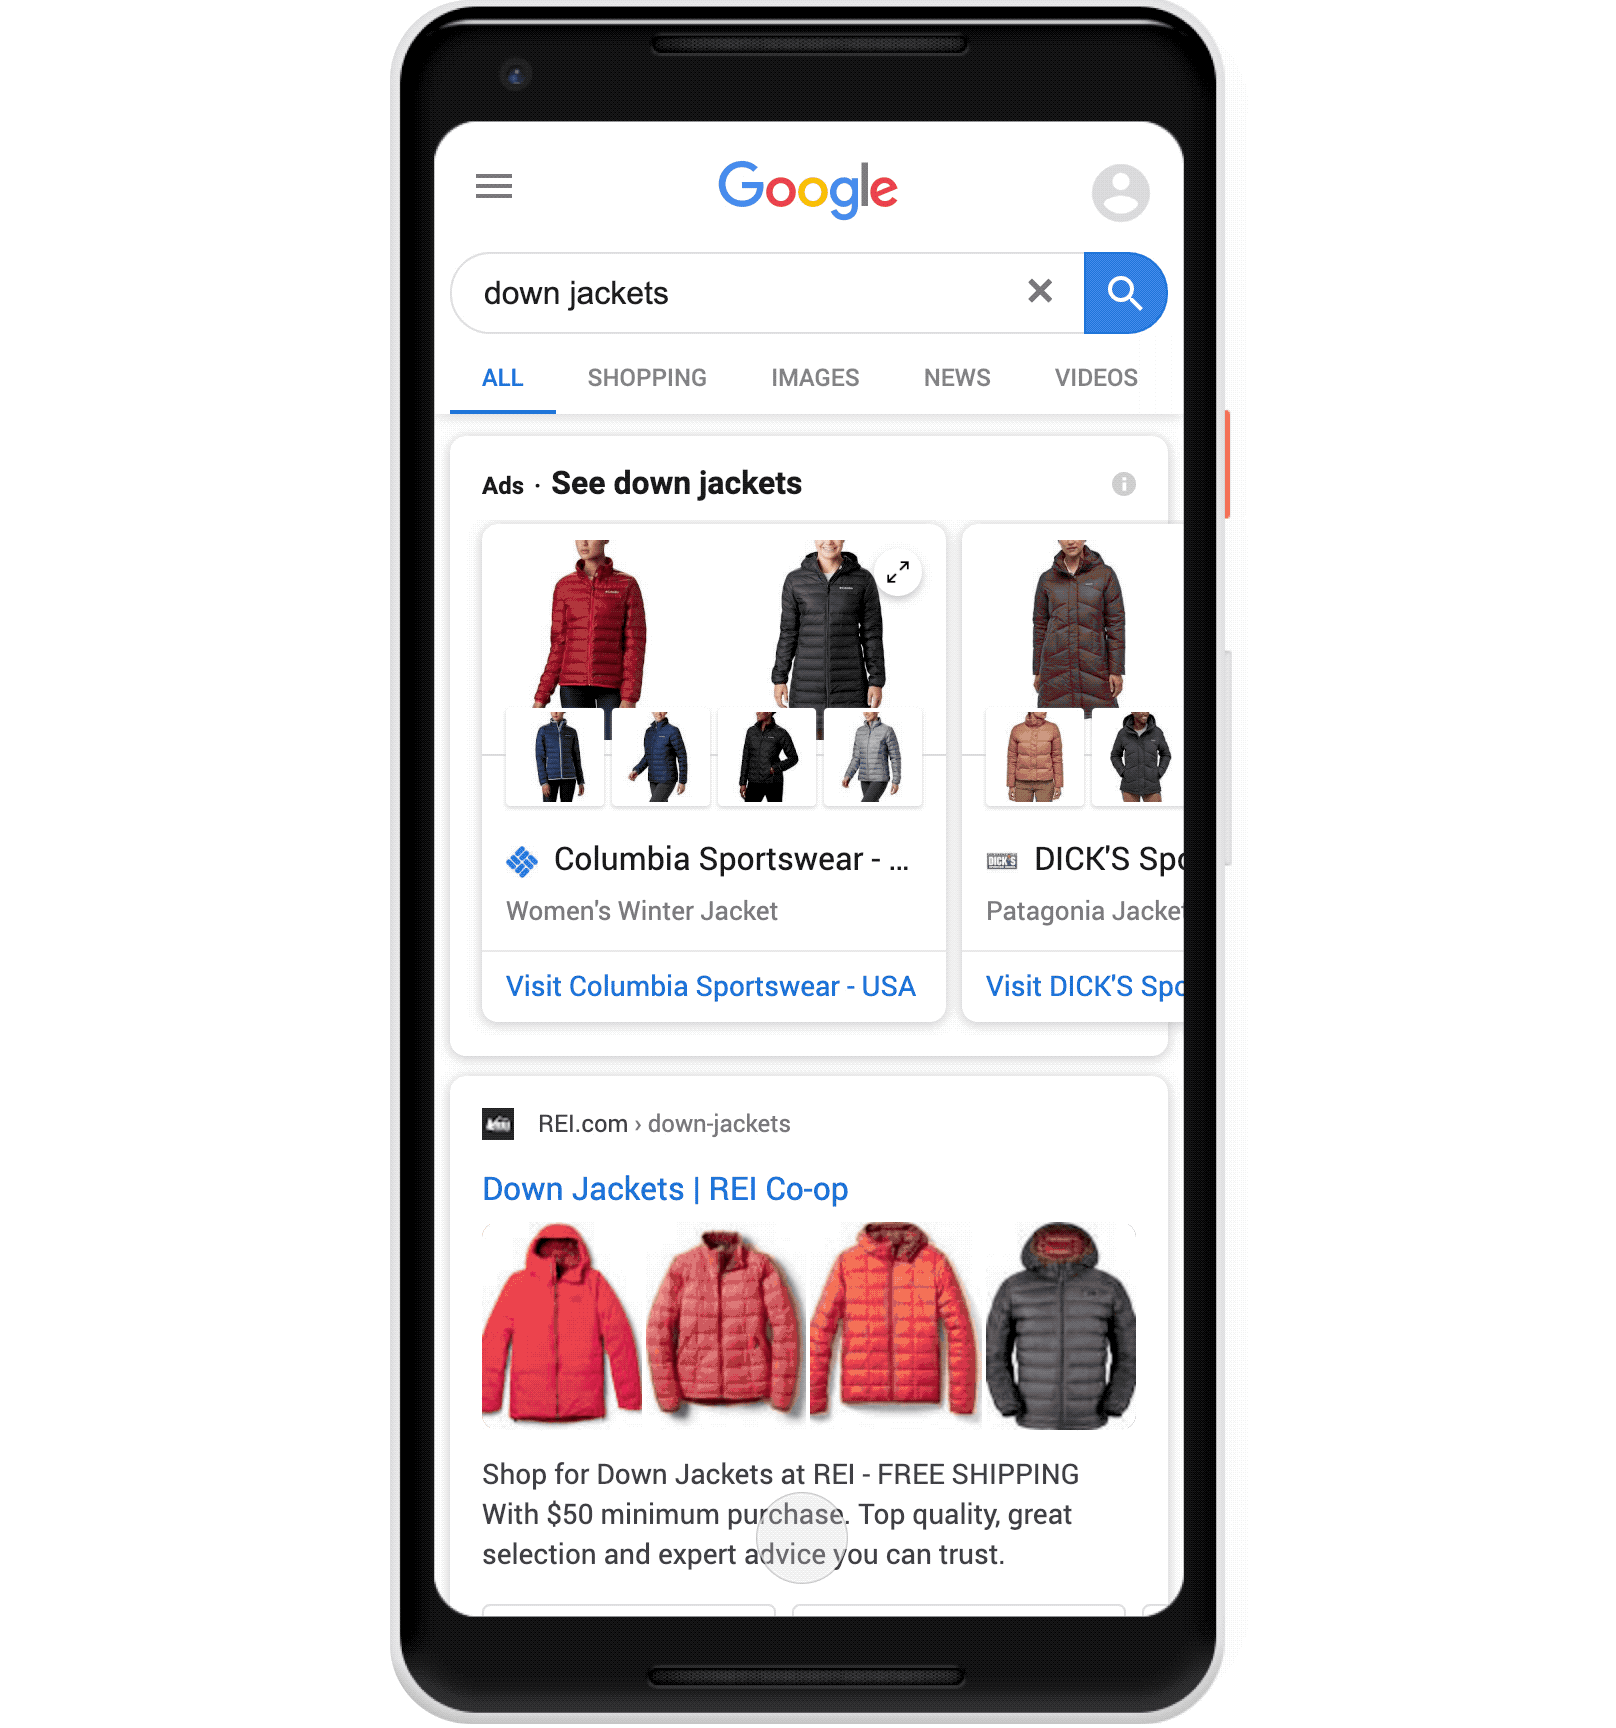 SERP Update - New Google Shopping Feature